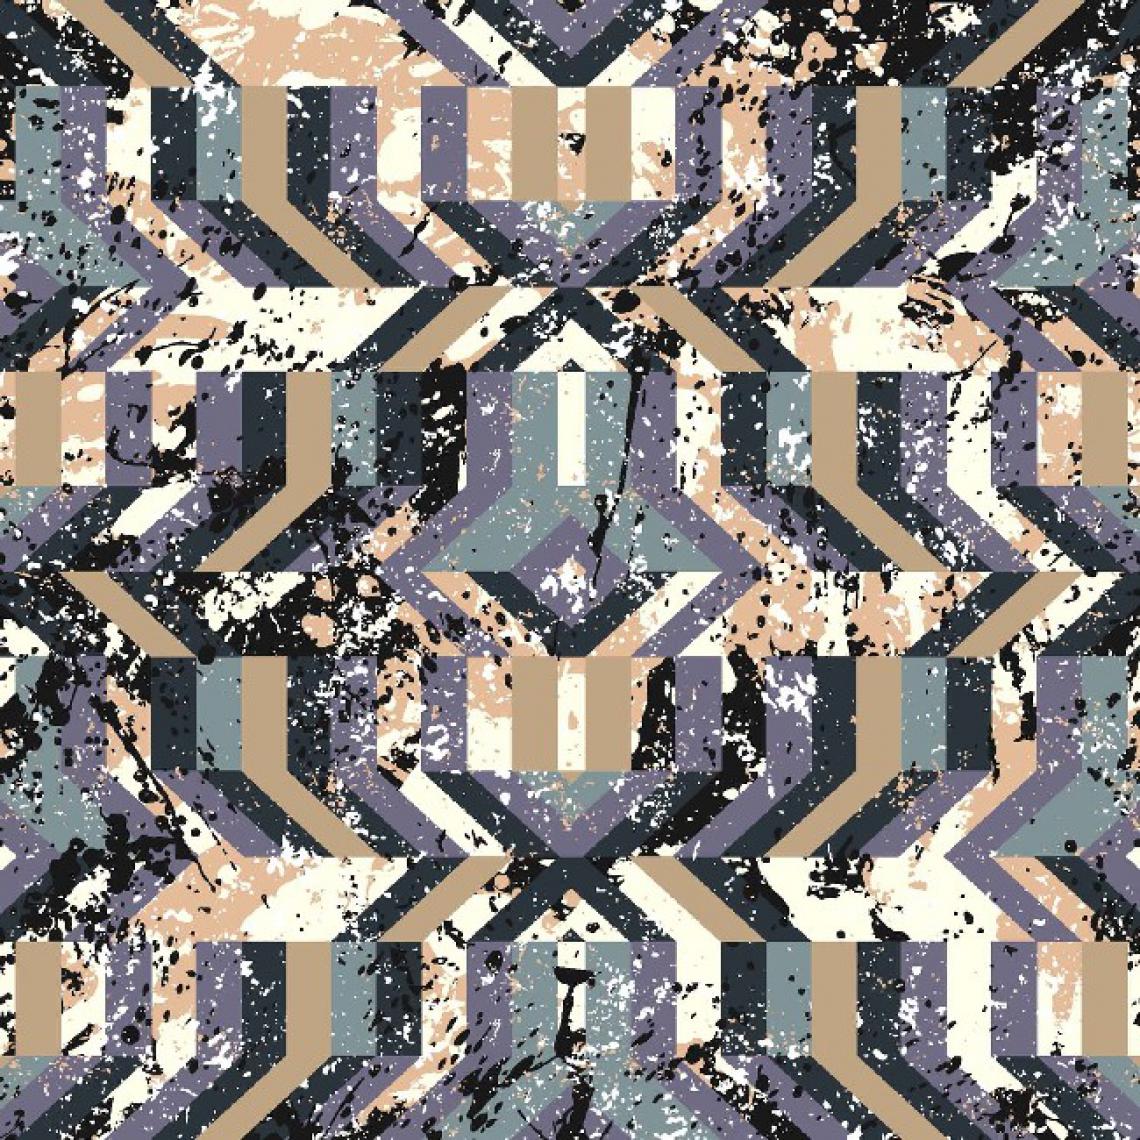 Homemania - HOMEMANIA Tapis Imprimé Geometric Feast 1 - Géométrique - Décoration de Maison - Antidérapant - Pour Salon, séjour, chambre à coucher - Multicolore en Polyester, Coton, 100 x 200 cm - Tapis